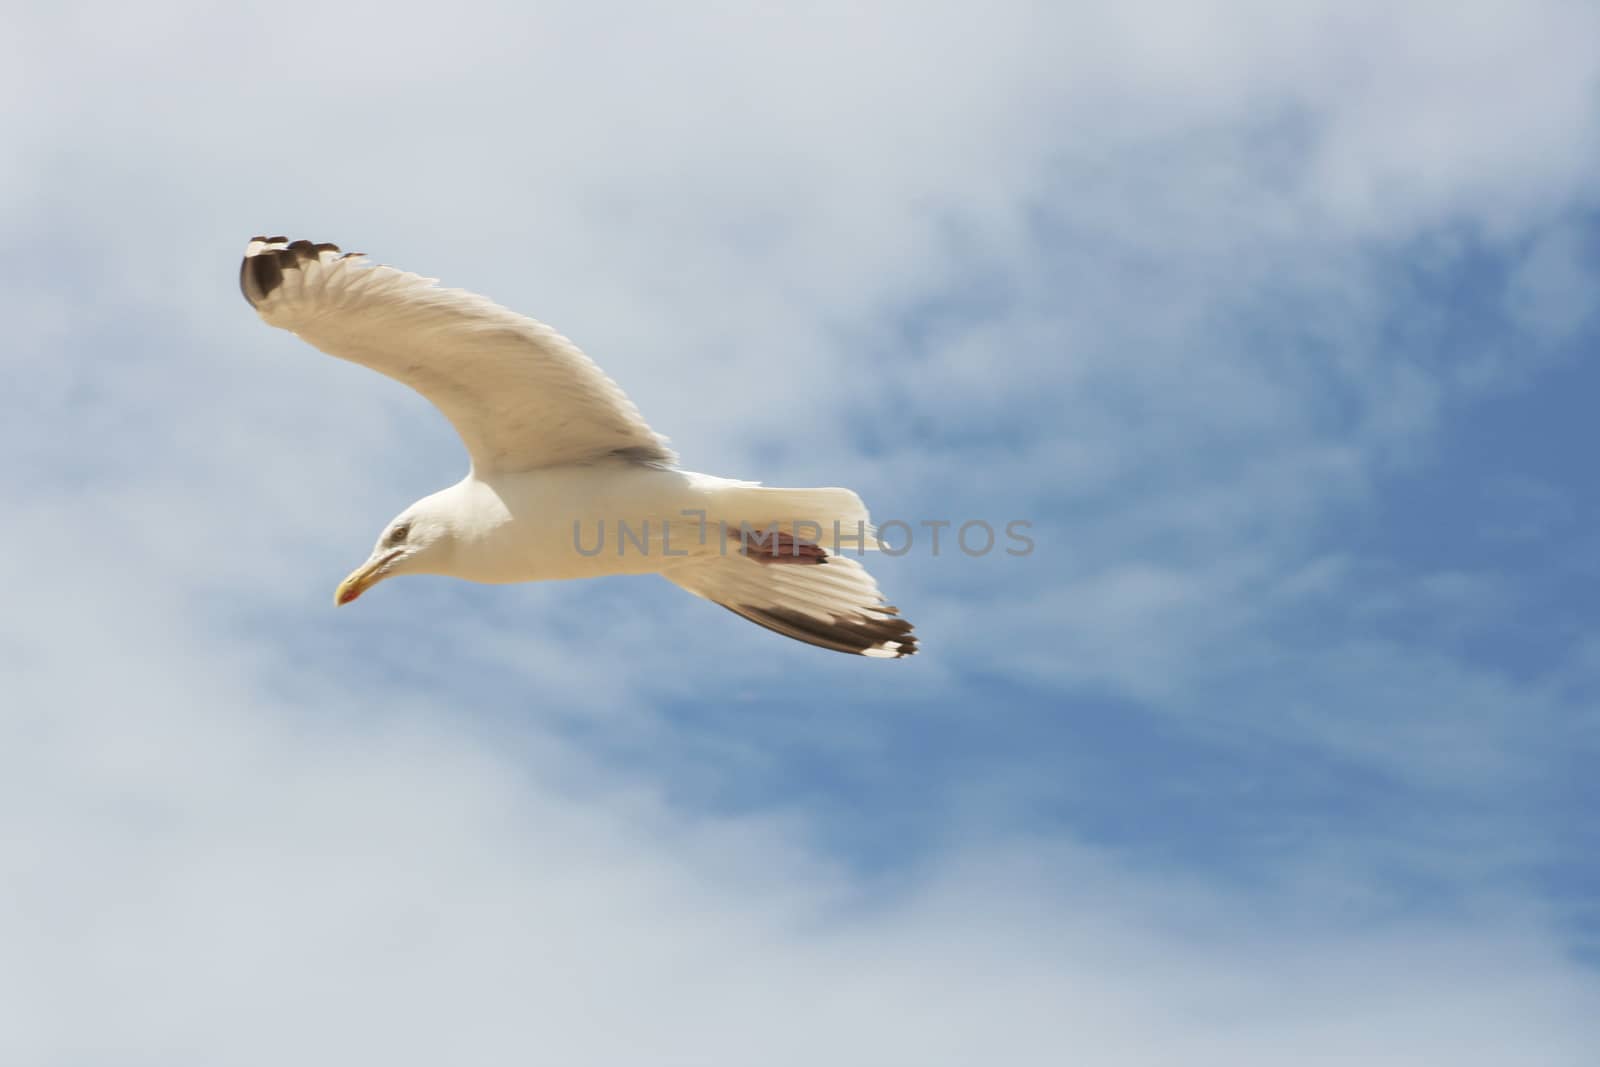 Close-up of a flying gull, with blue sky background  Nahaufnahme einer fliegenden Silberm�we,mit blauem Himmel im Hintergrunde Silberm�we  flying gull  (Larus argentatus)